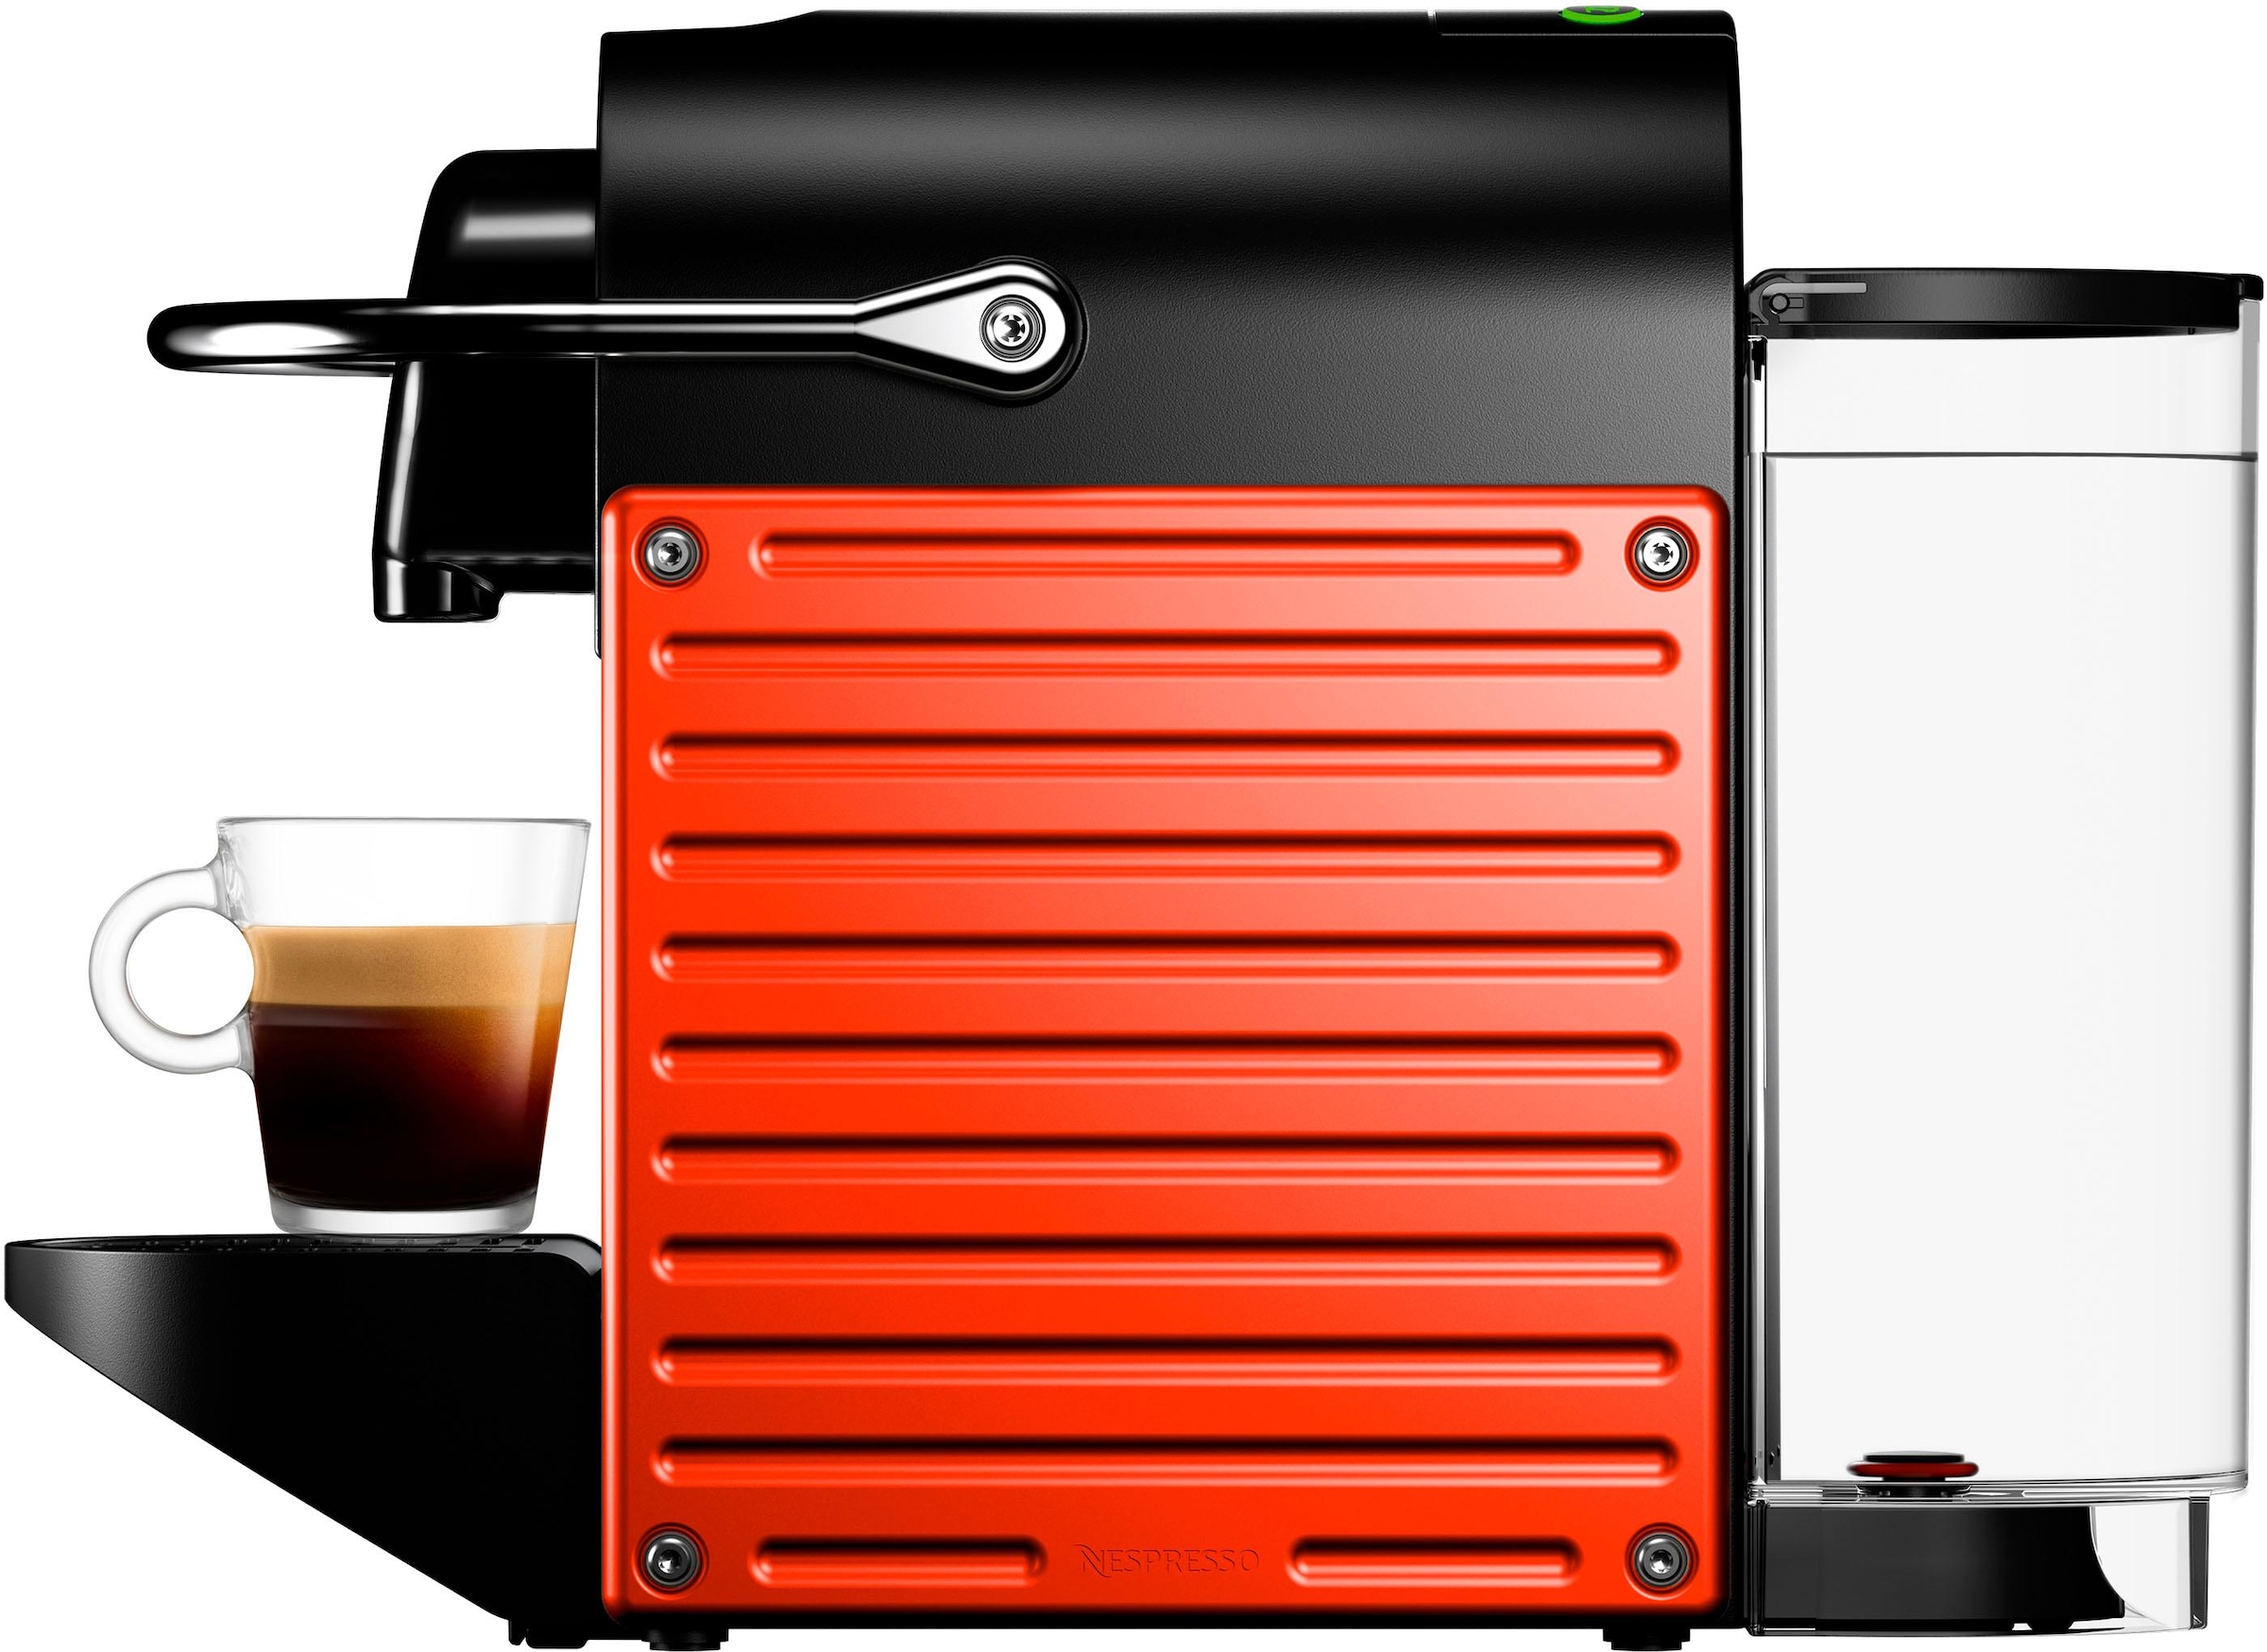 Nespresso Kapselmaschine »Pixie XN3045 mit Jahren mit 3 Kapseln XXL inkl. von Red«, Garantie 14 Willkommenspaket Krups